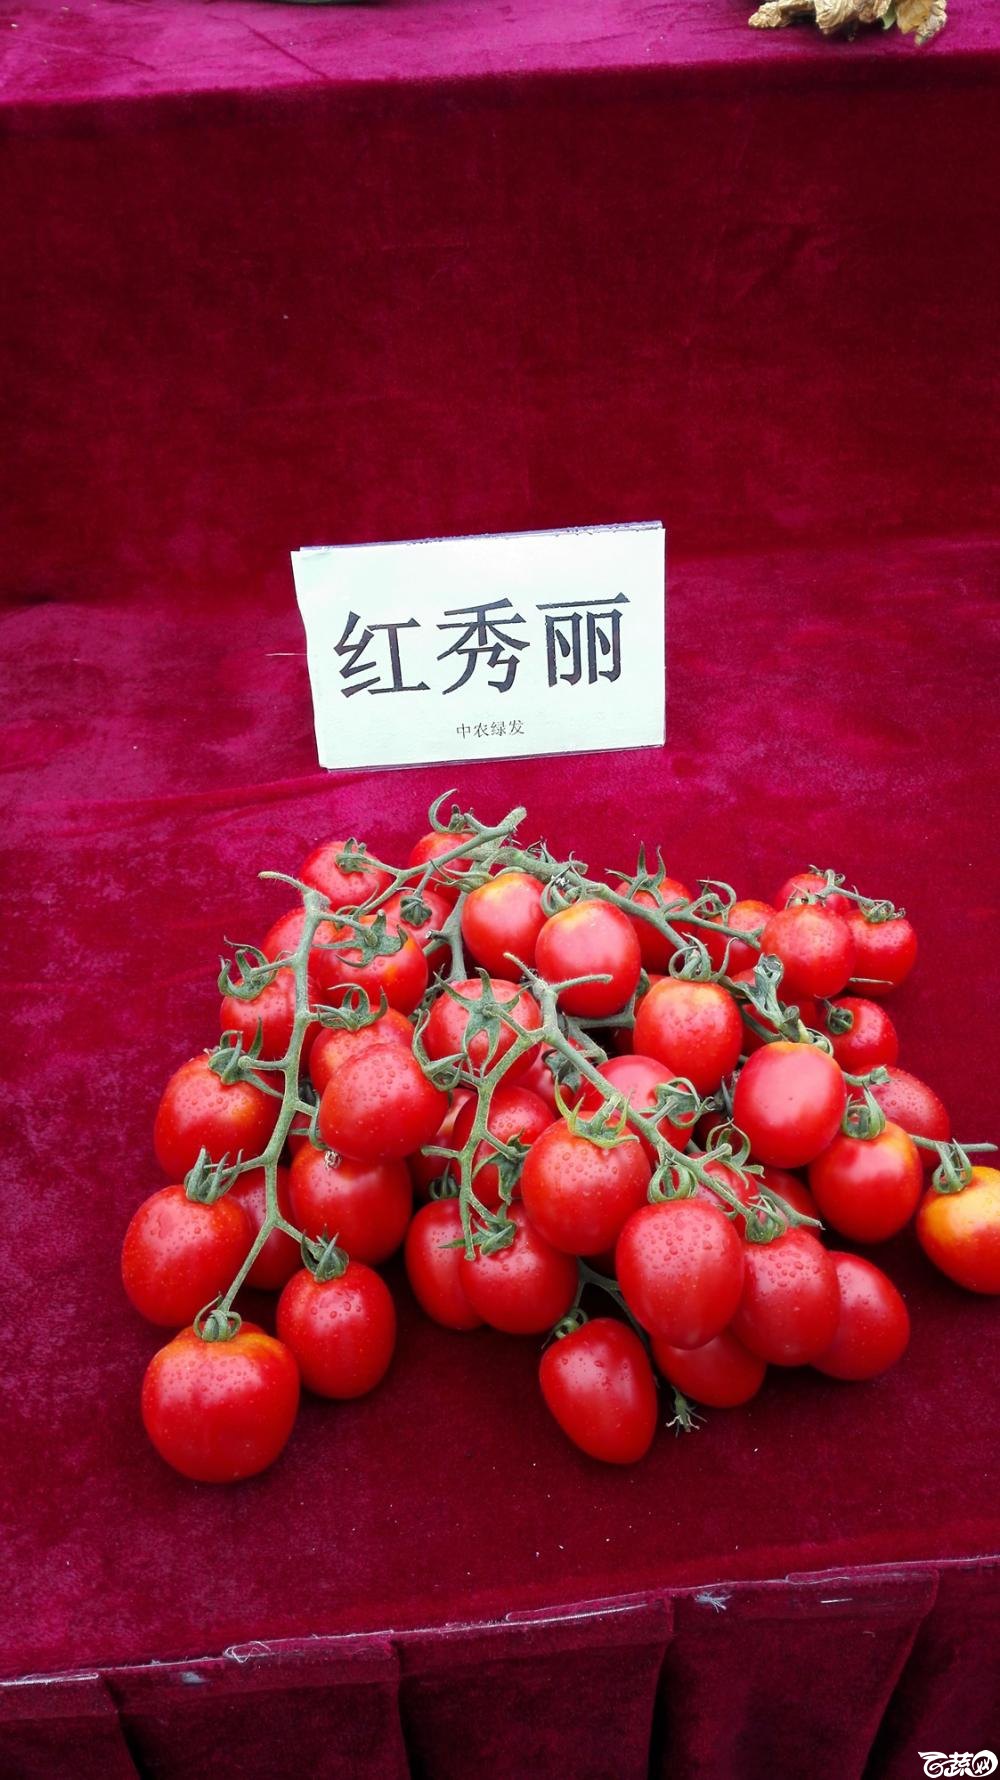 2014年12月8号中山蔬菜新品种展示会_番茄_005.jpg